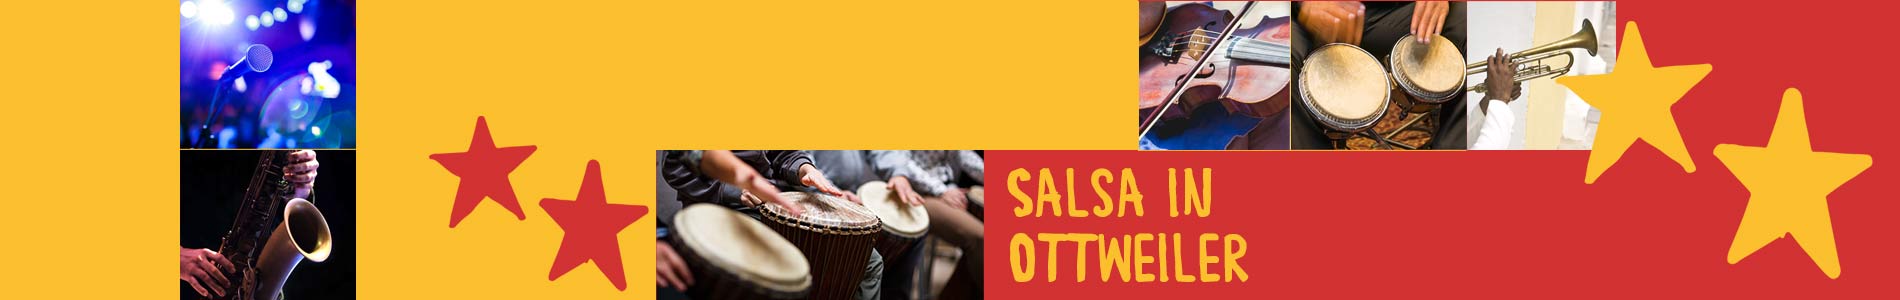 Salsa in Ottweiler – Salsa lernen und tanzen, Tanzkurse, Partys, Veranstaltungen